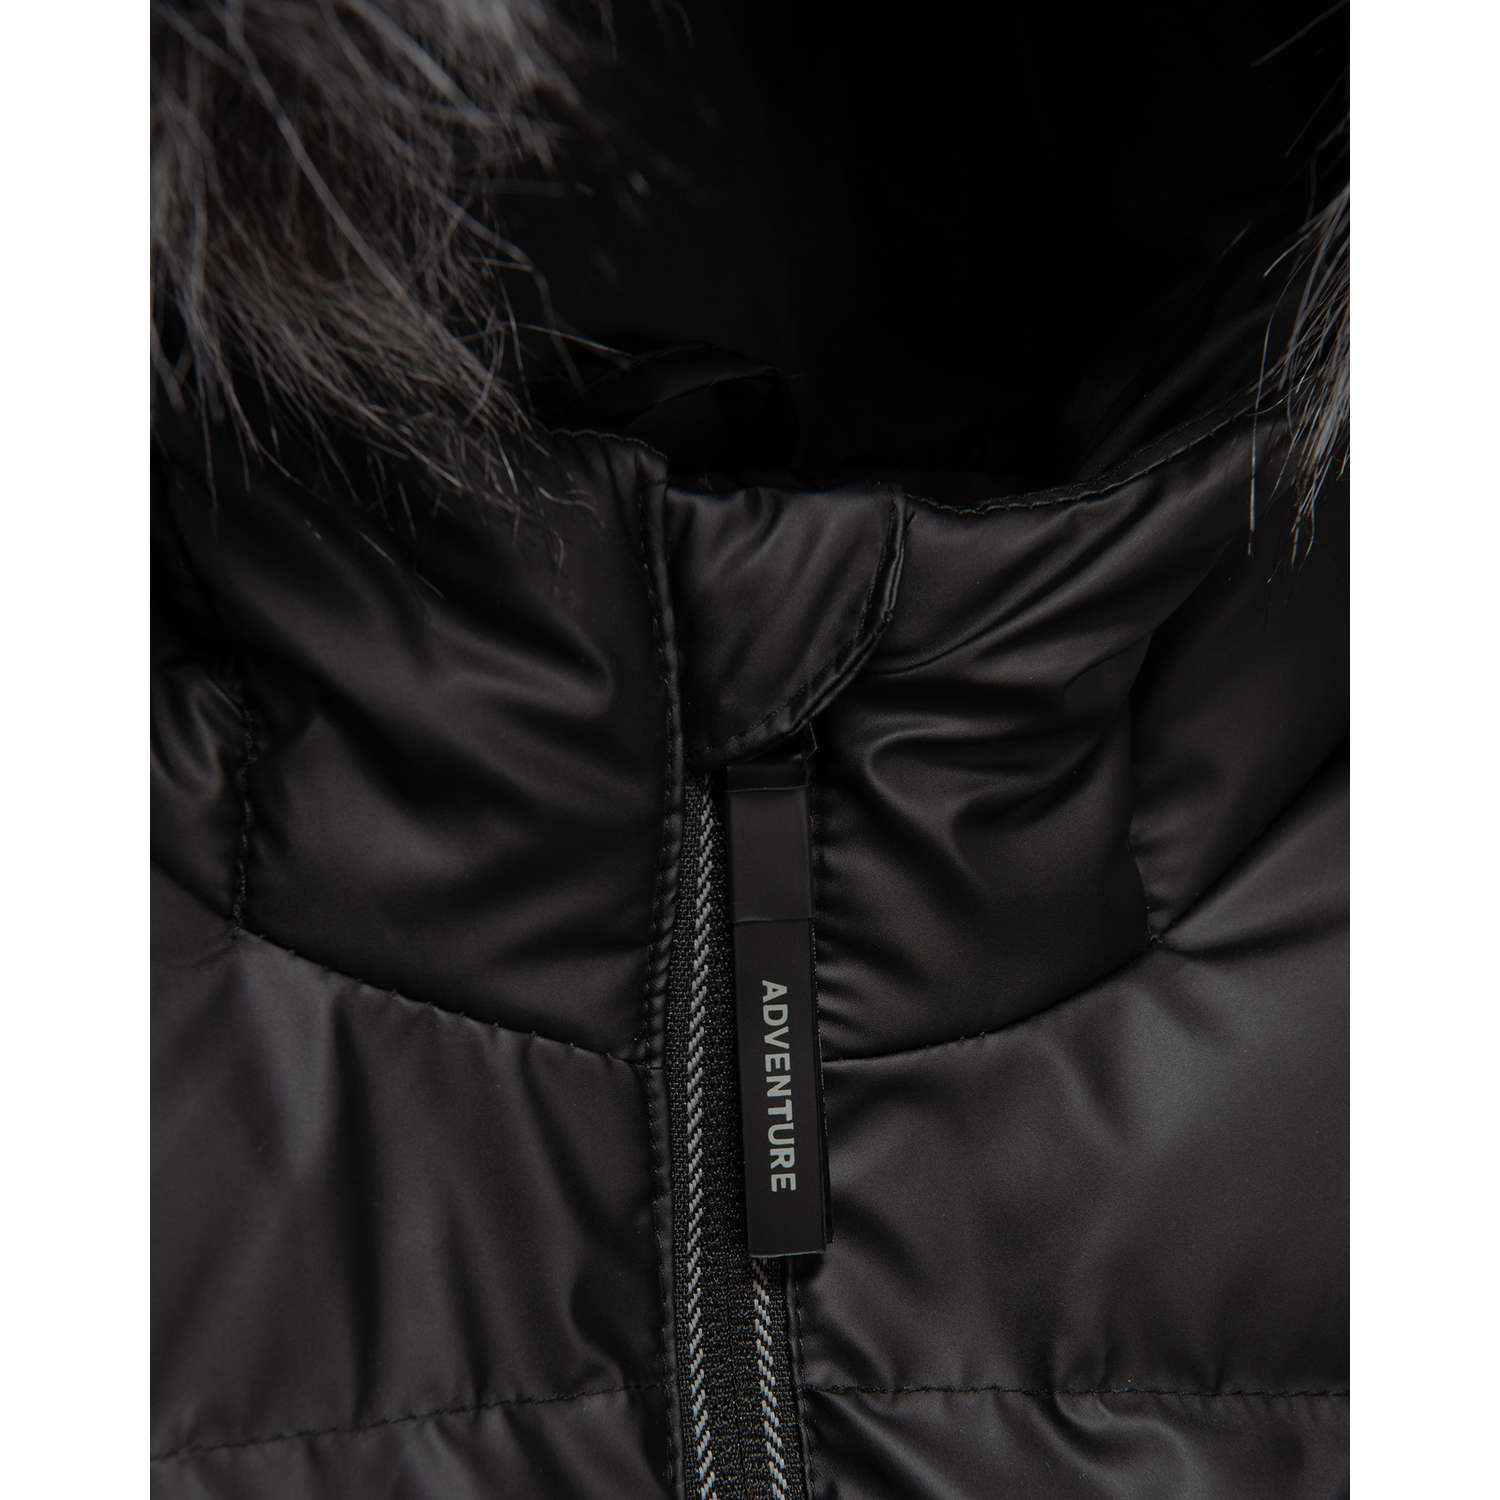 Куртка Futurino Cool W23FC5-B150kb-99 - фото 5